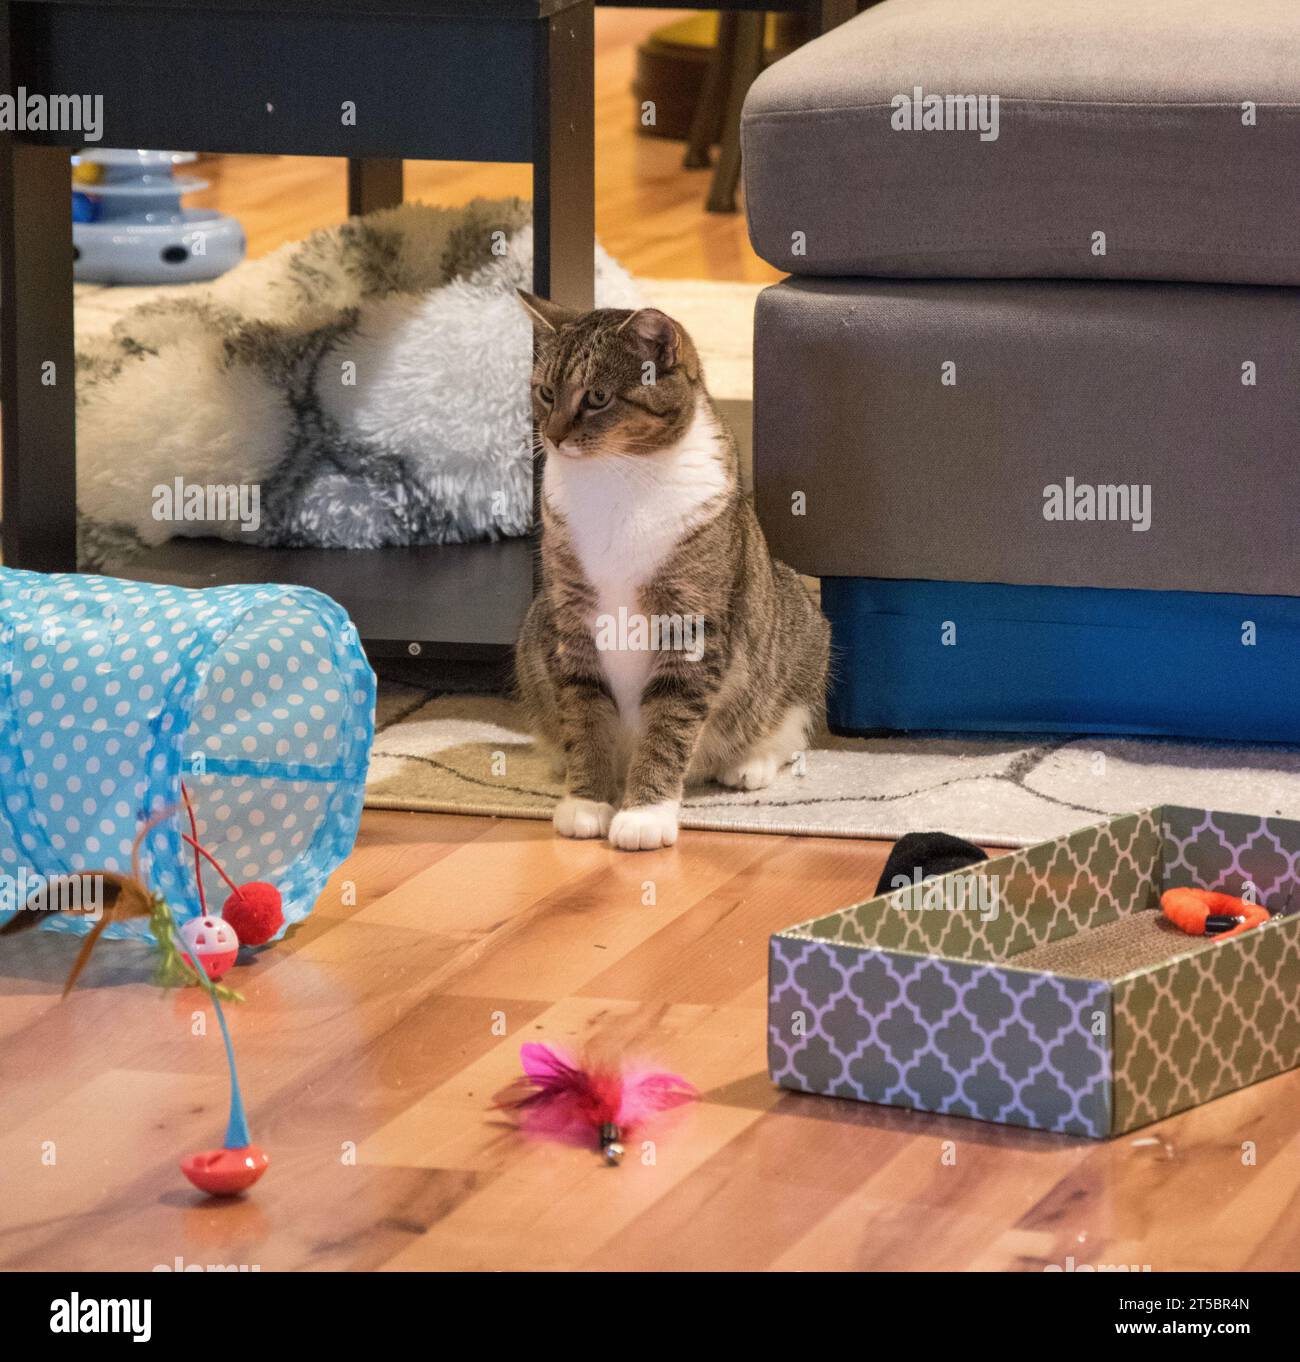 Un gato tabby doméstico de pelo corto sentado en el suelo, mirando juguetes esparcidos por la habitación. Foto de stock